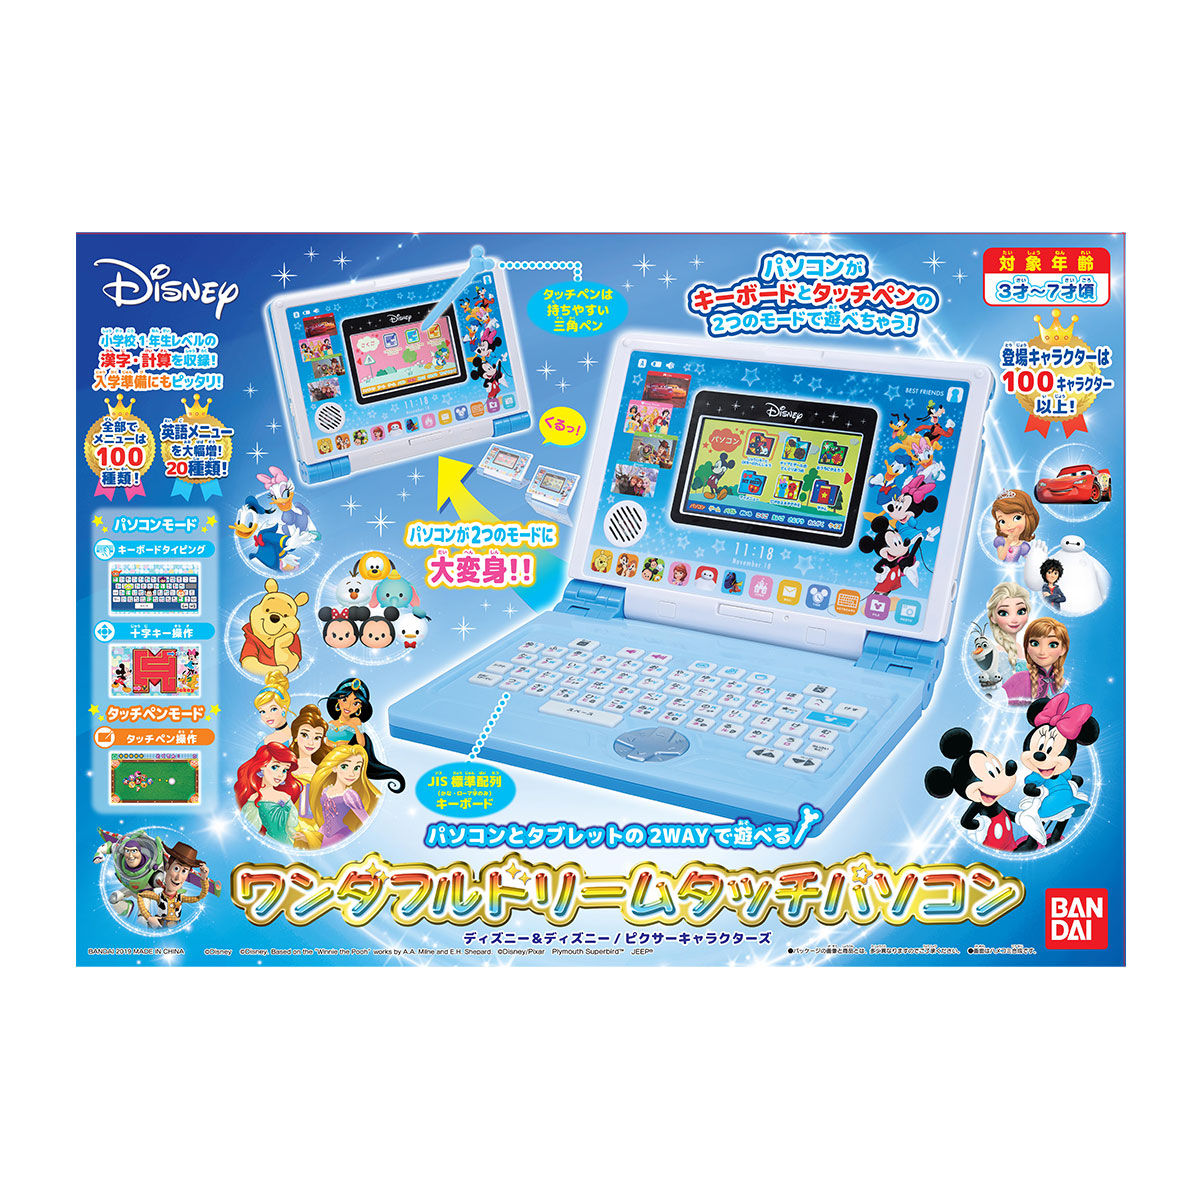 ディズニー ディズニー ピクサーキャラクターズ パソコンとタブレットの２wayで遊べる ワンダフルドリームタッチパソコン Bandai Toys